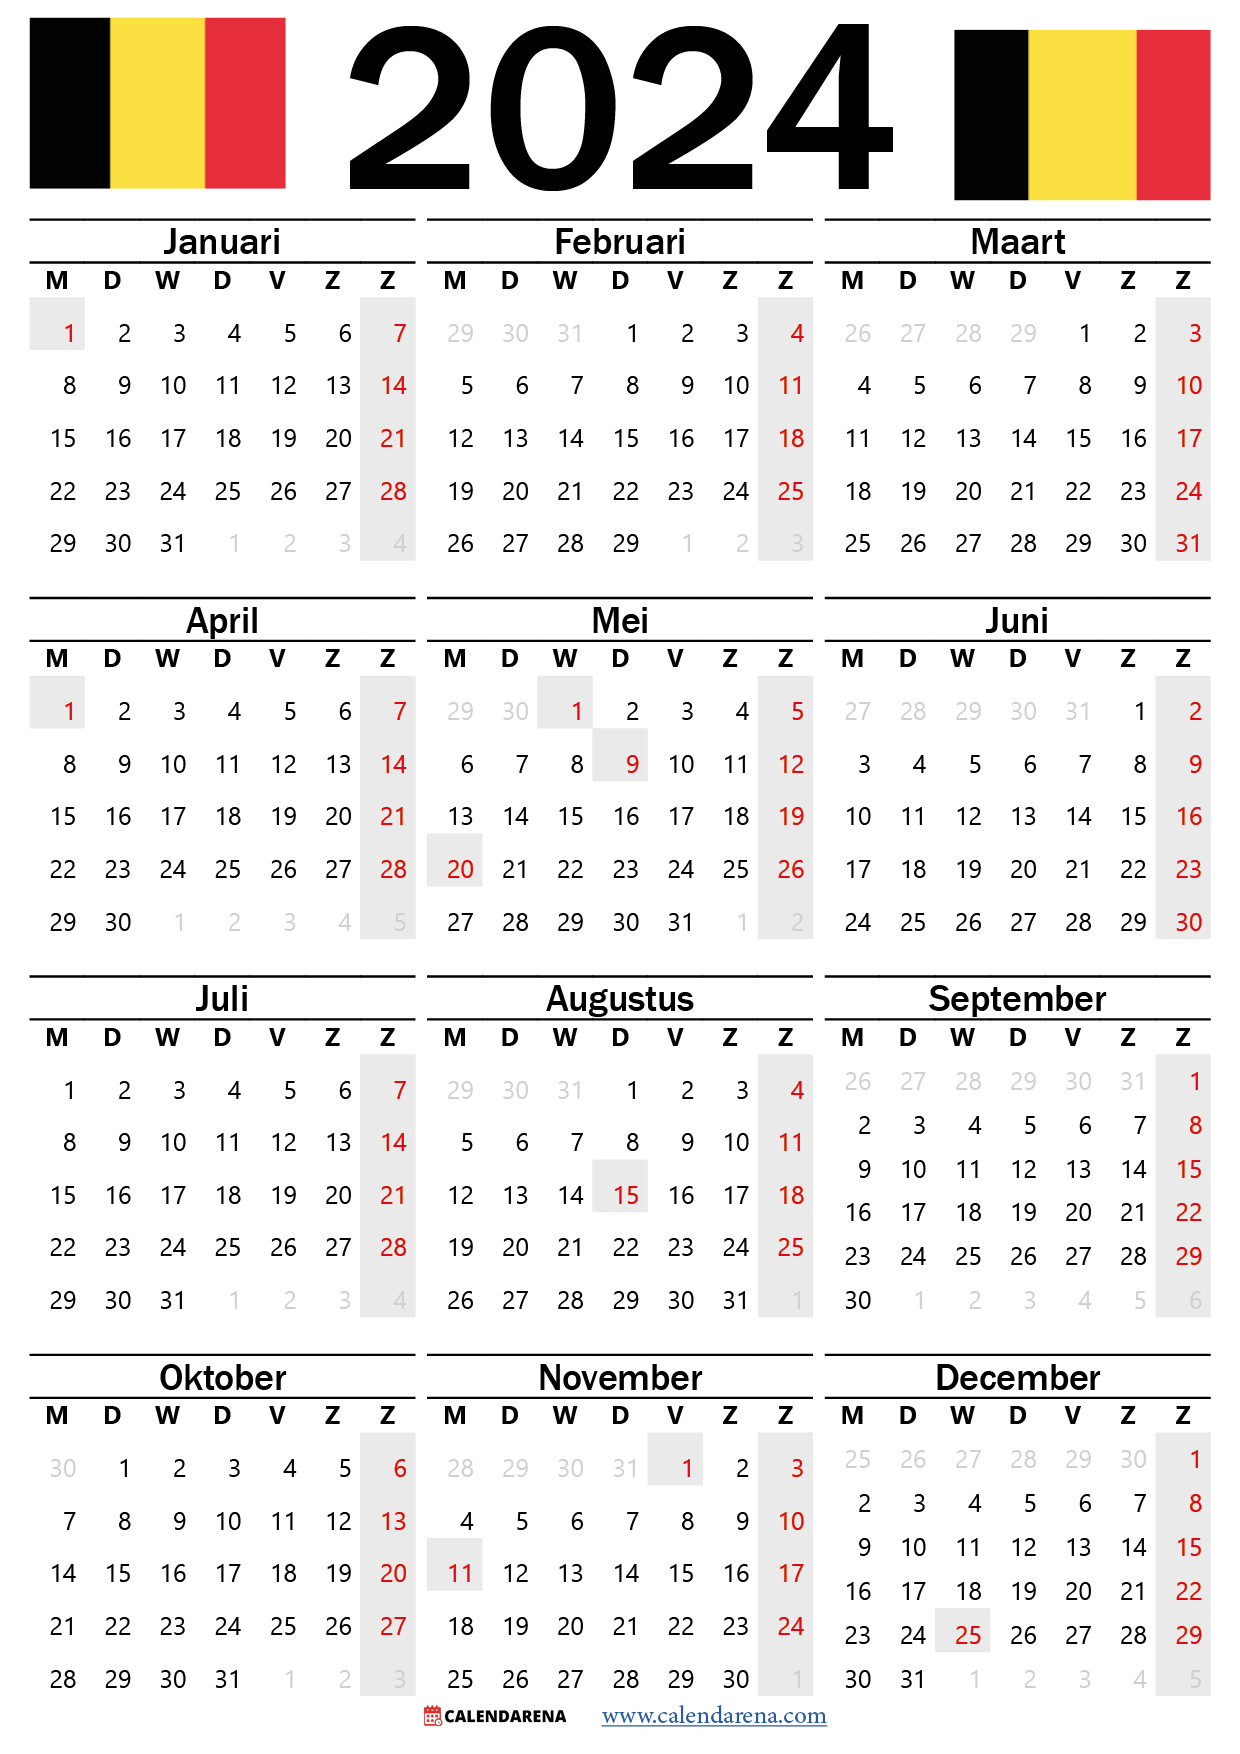 kalender weeknummers 2024 België